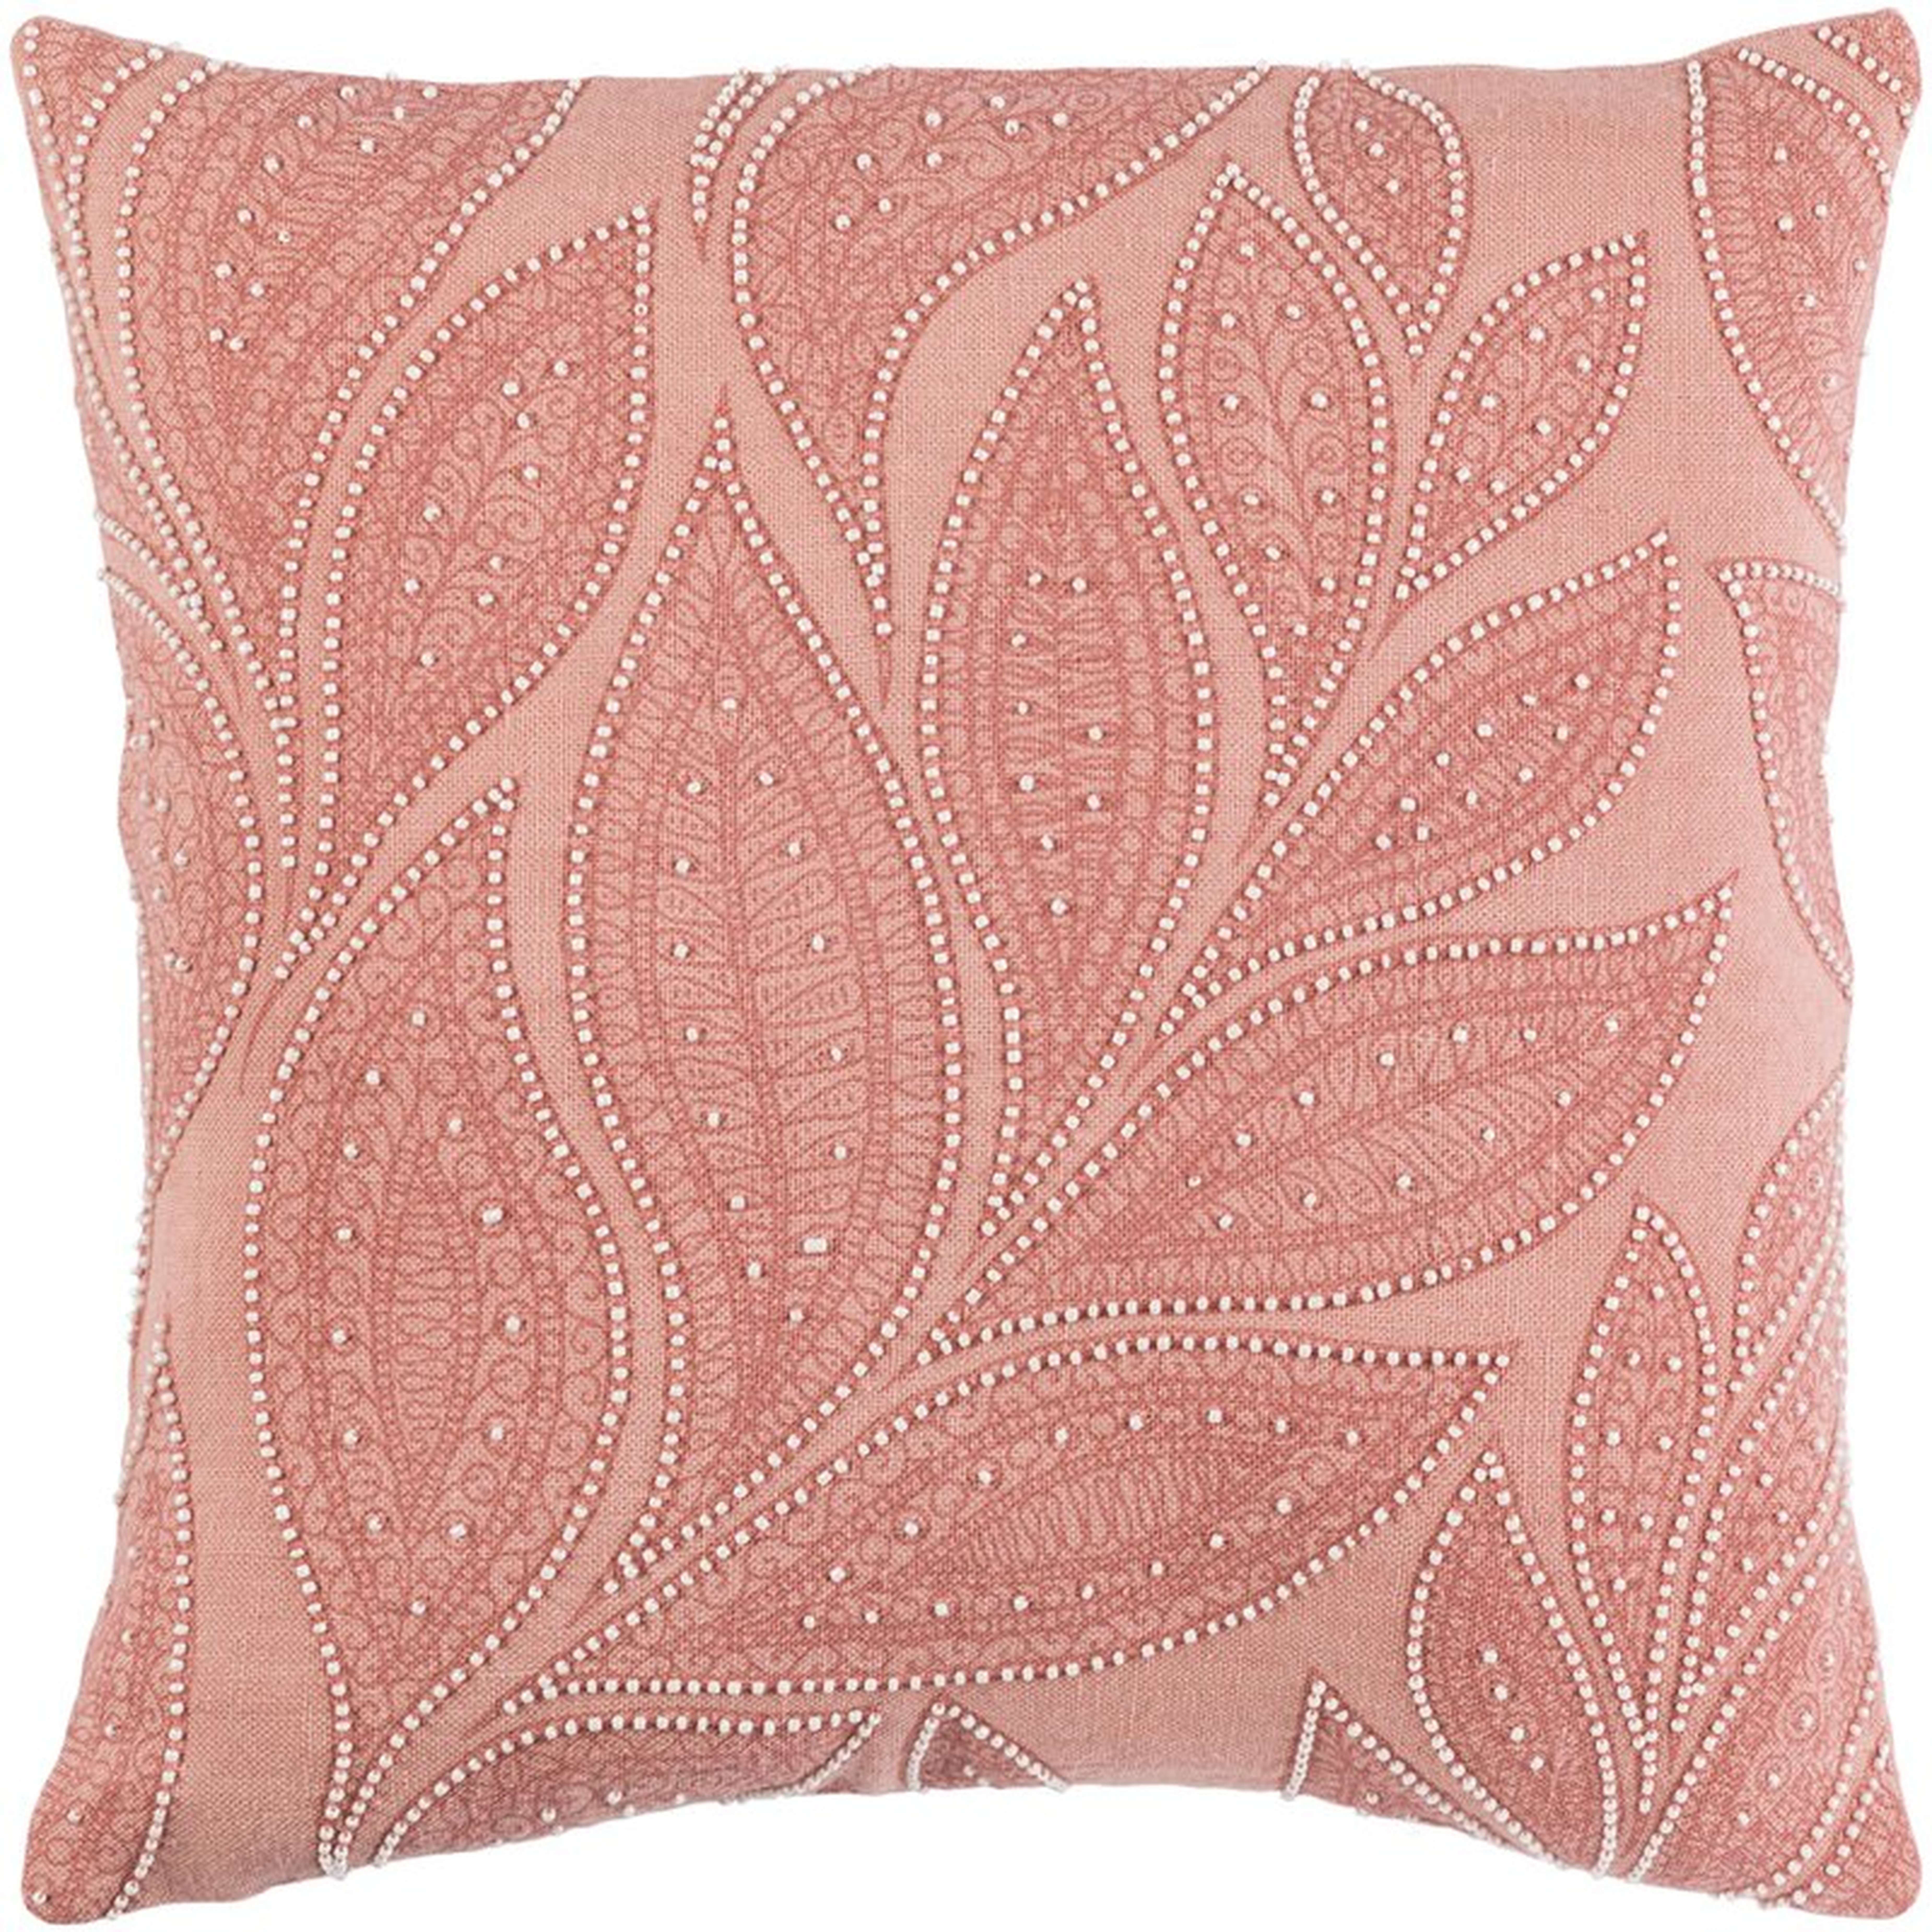 Tessie Linen Pillow Cover 18x18 - Wayfair